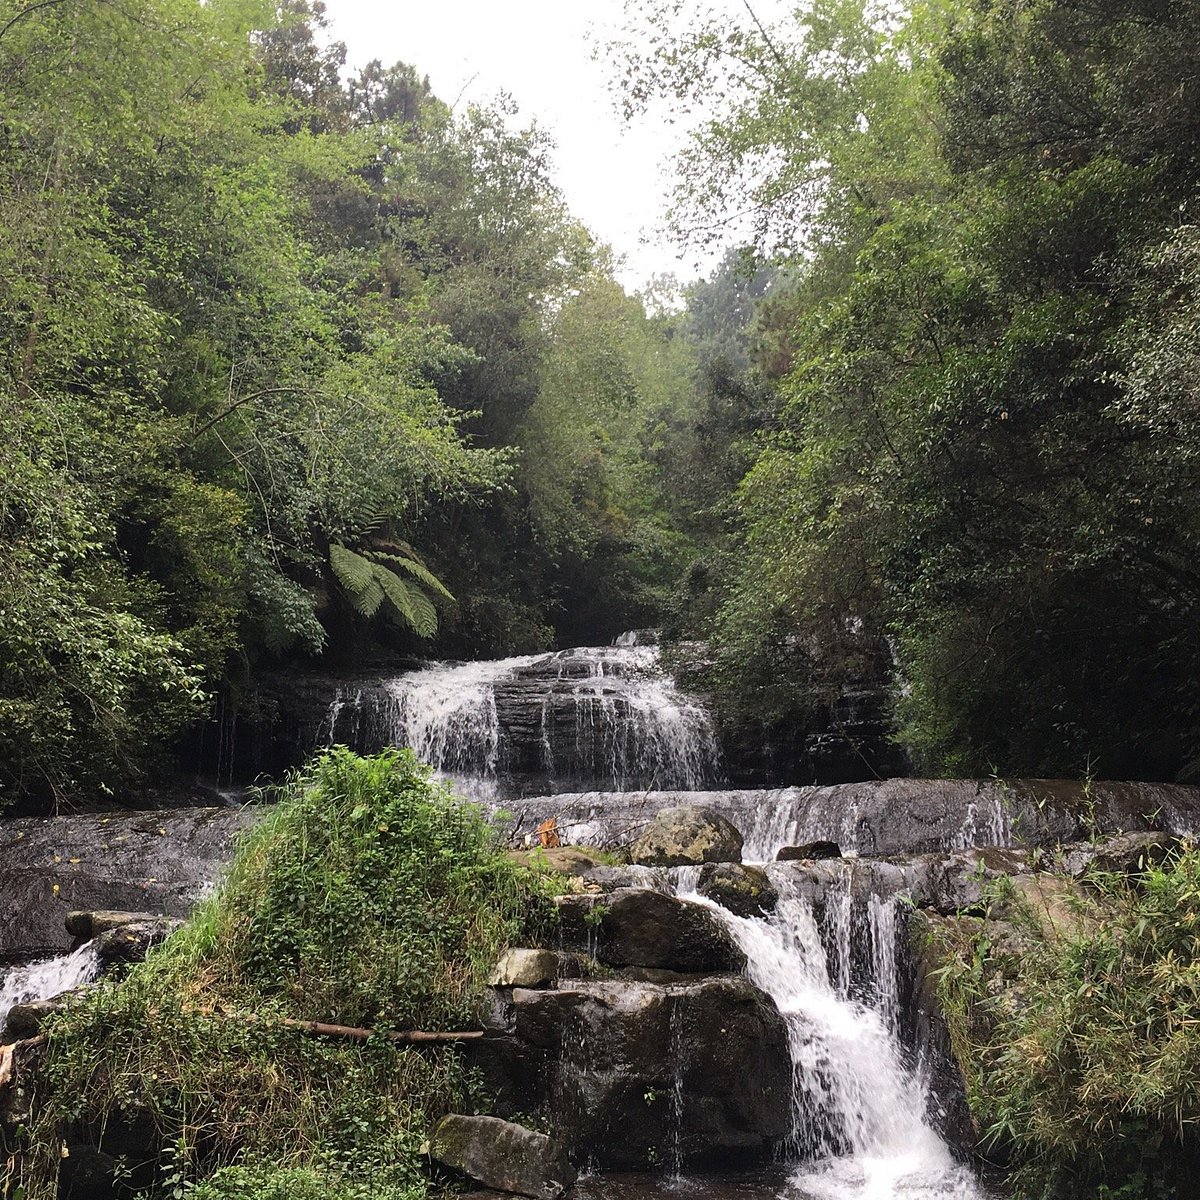 Vattakanal Waterfalls Kodaikanal 2022 Lo Que Se Debe Saber Antes De Viajar Tripadvisor